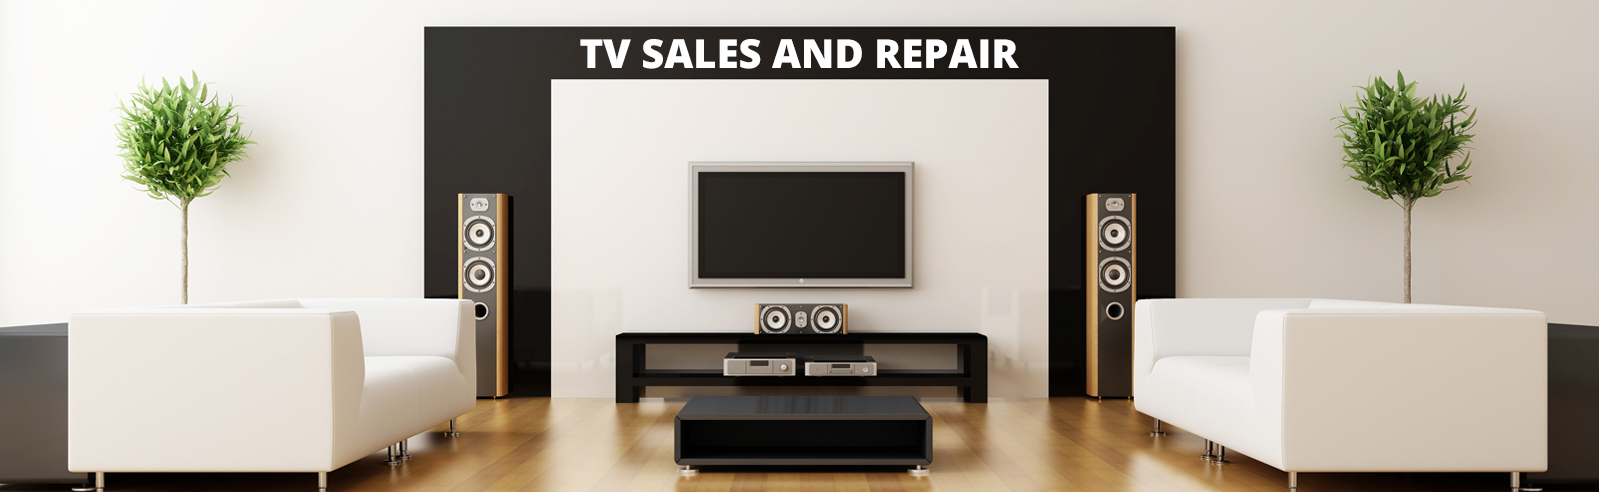 TV Repair and Sales